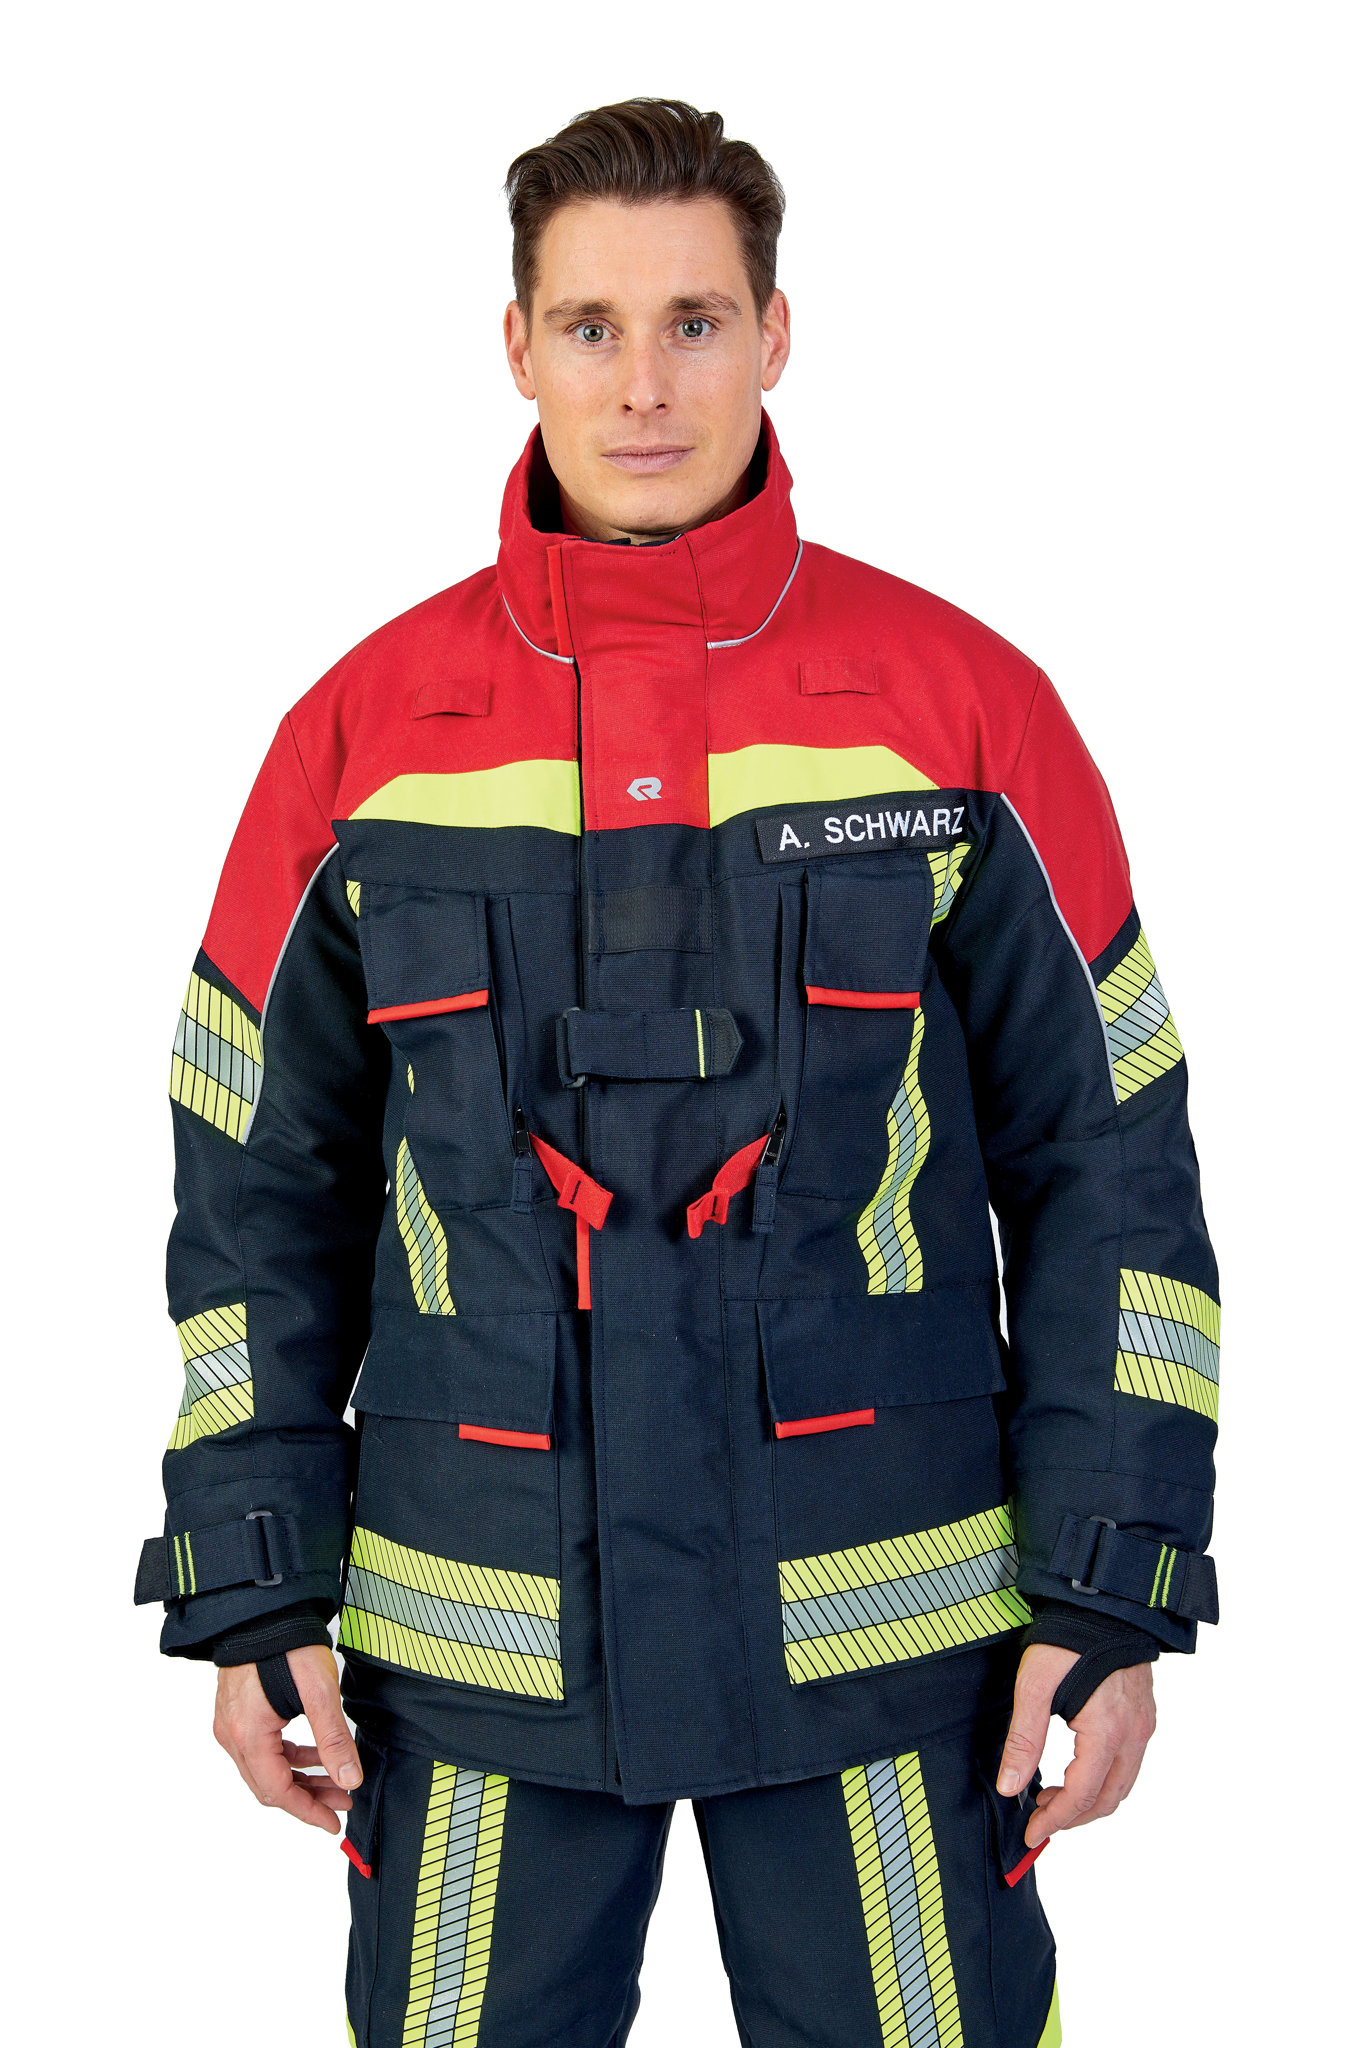 Bild von ROSENBAUER Feuerwehreinsatzjacke FIRE FLEX, NOMEX NXT, schwarzblau/rot, Gr. 40-42 B